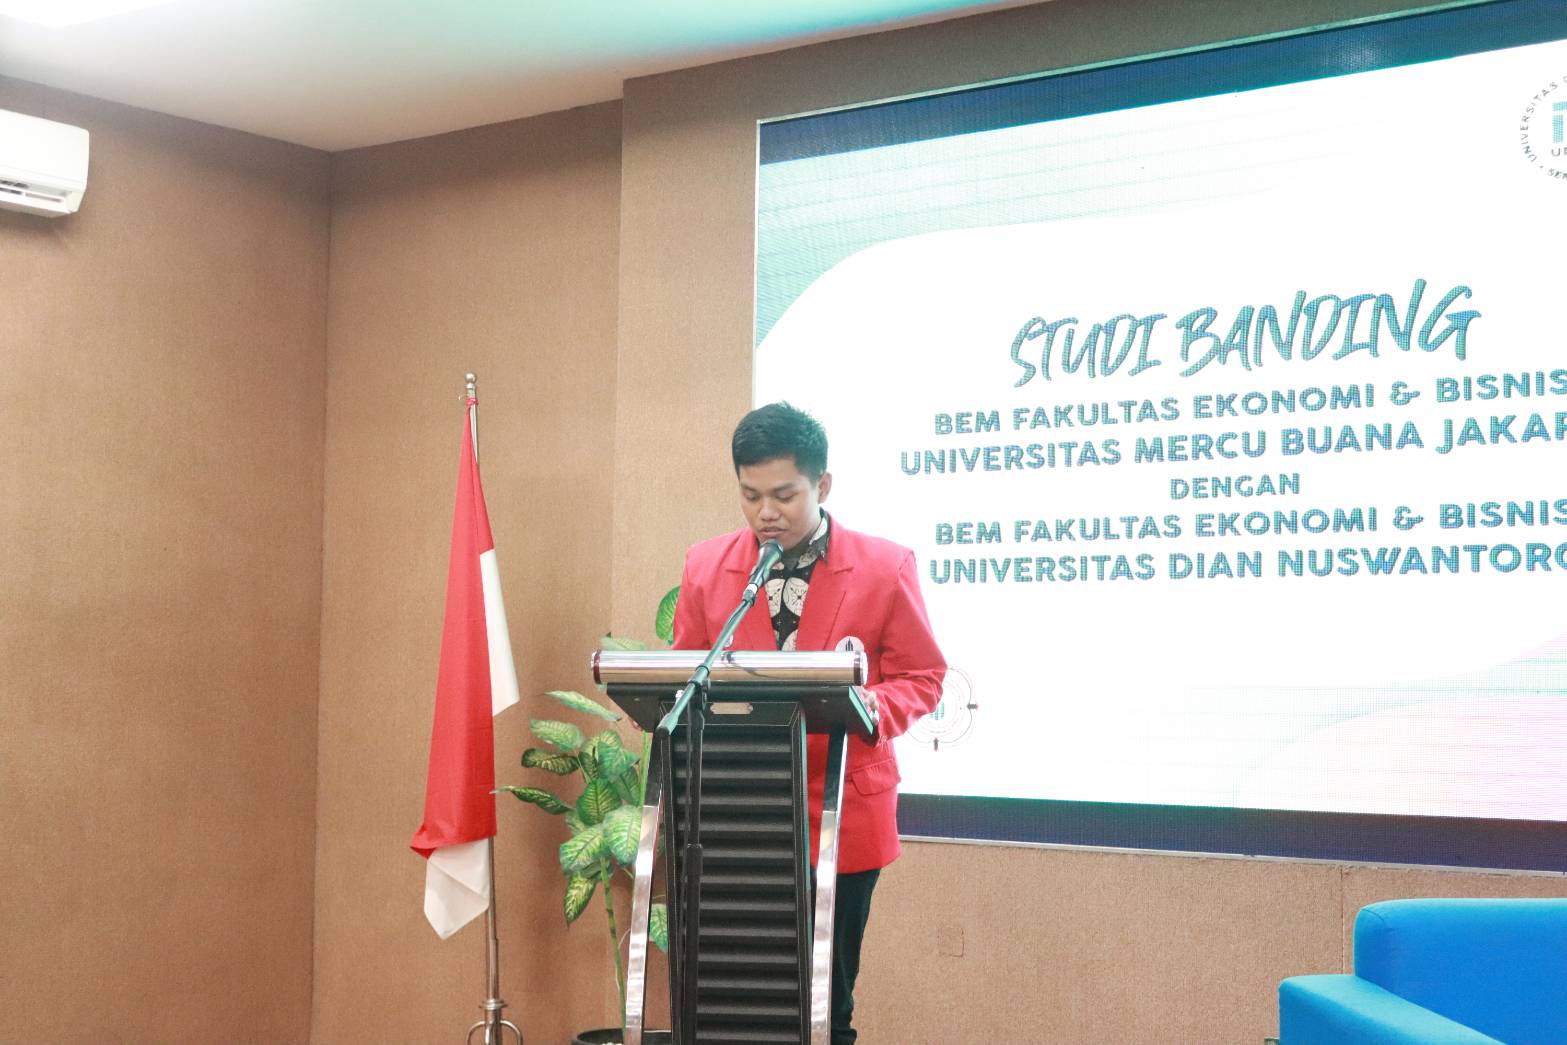 Sambutan Ketua Pelaksana Studi Banding 2019/2020 Universitas Mercu Buana